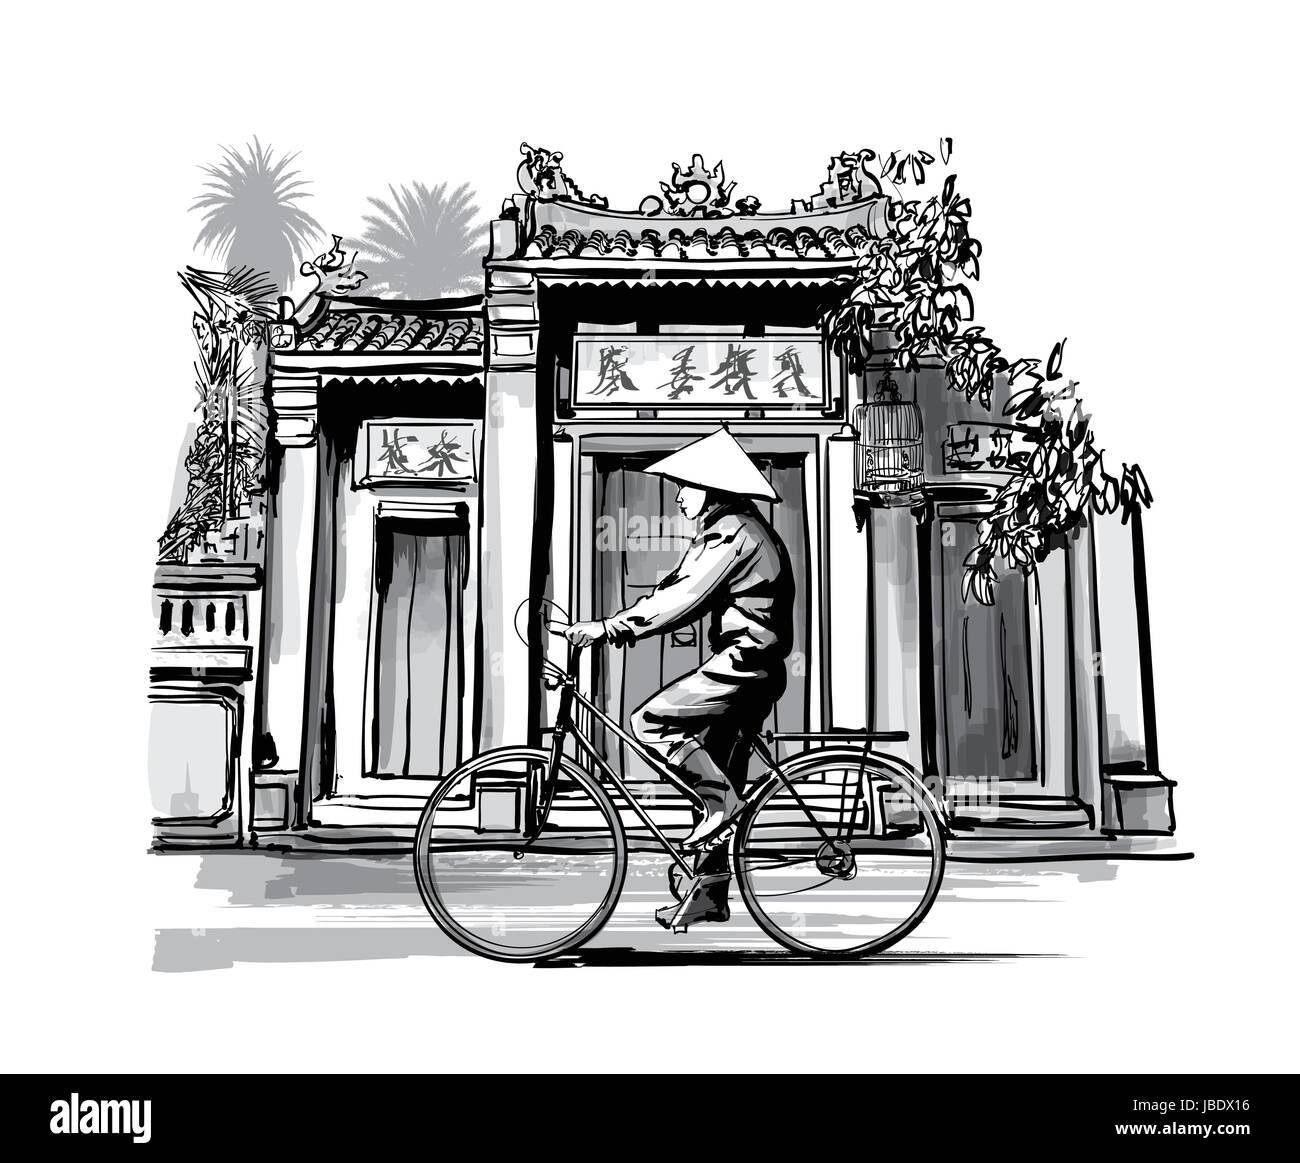 Vietnamesen mit kegelförmiger Hut auf Fahrrad - Vektor-illustration Stock Vektor